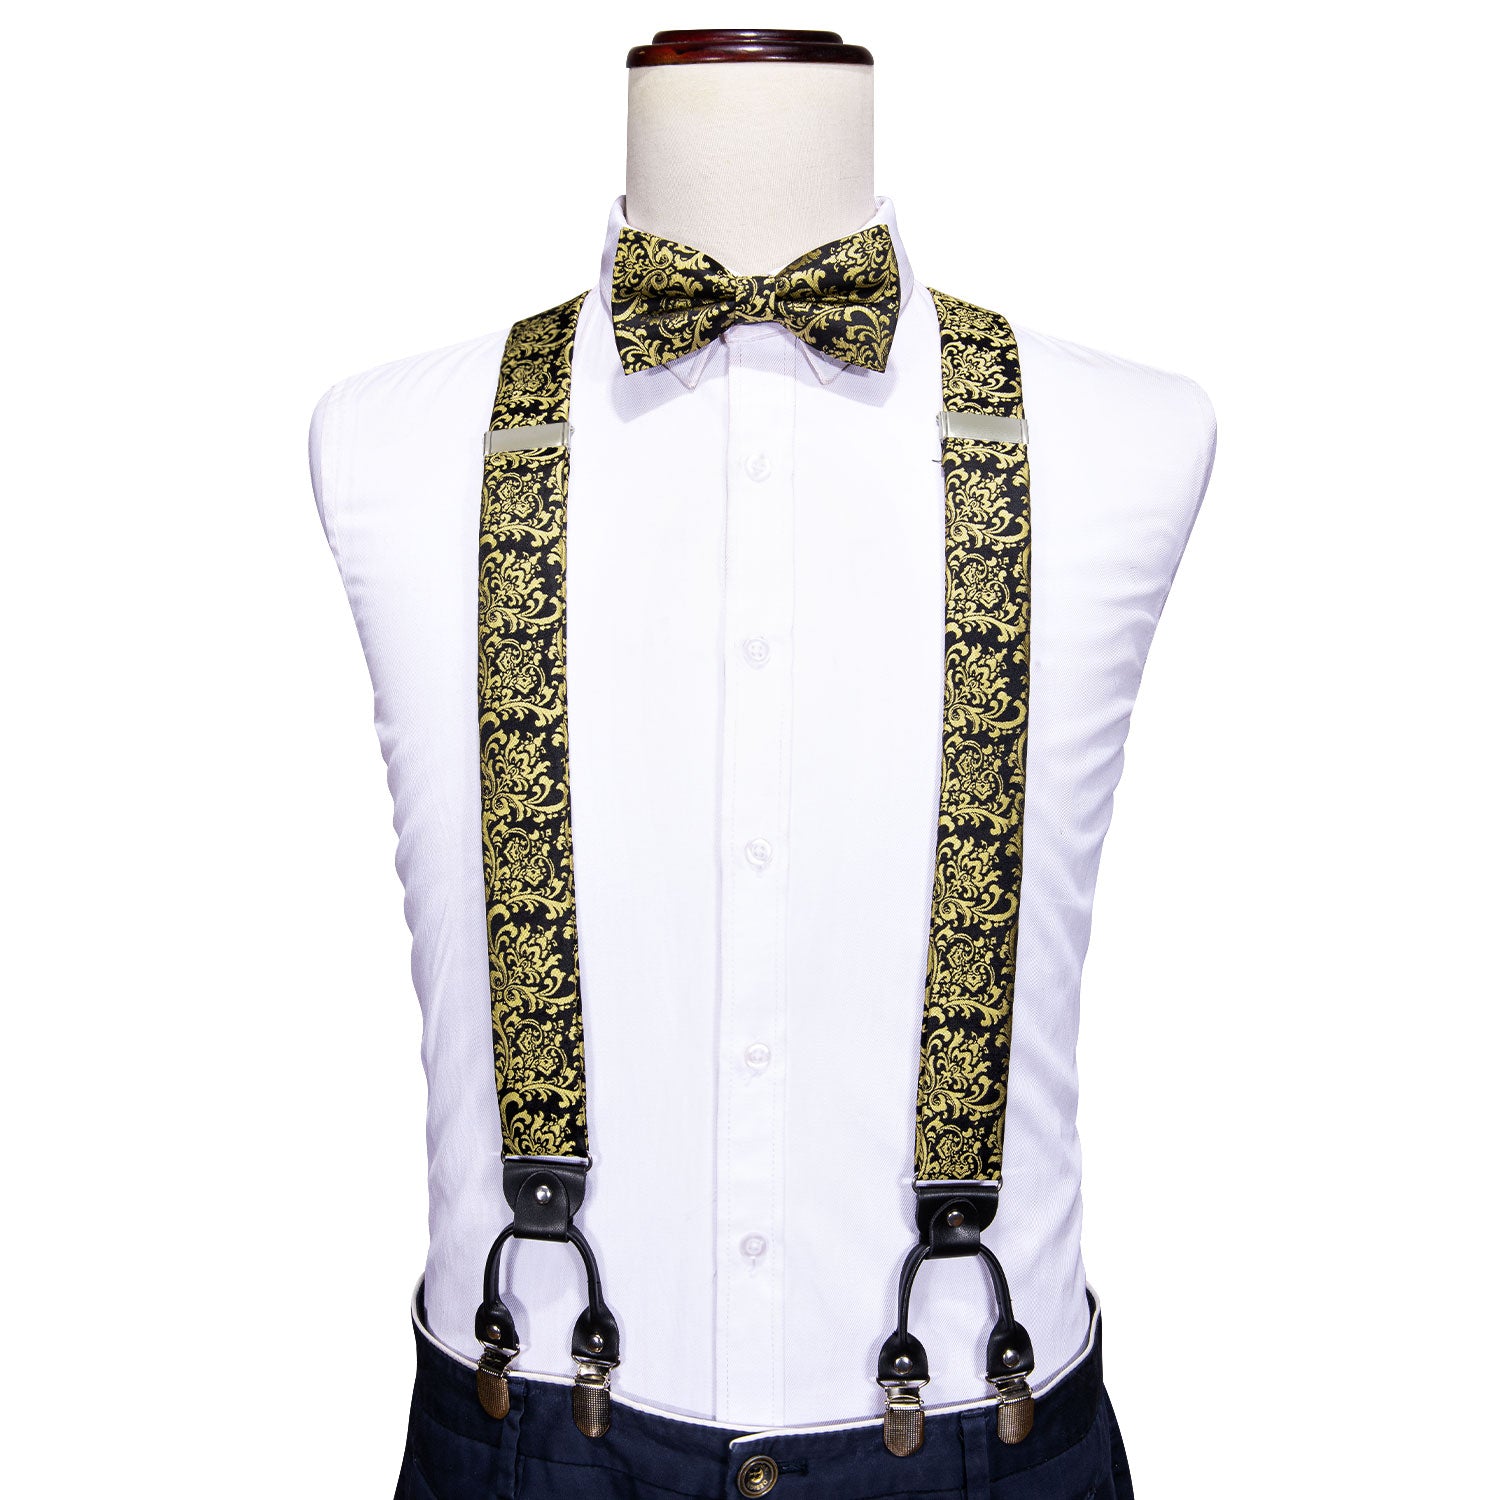 Black Tie Golden Floral Y Back Adjustable Bow Tie Suspenders